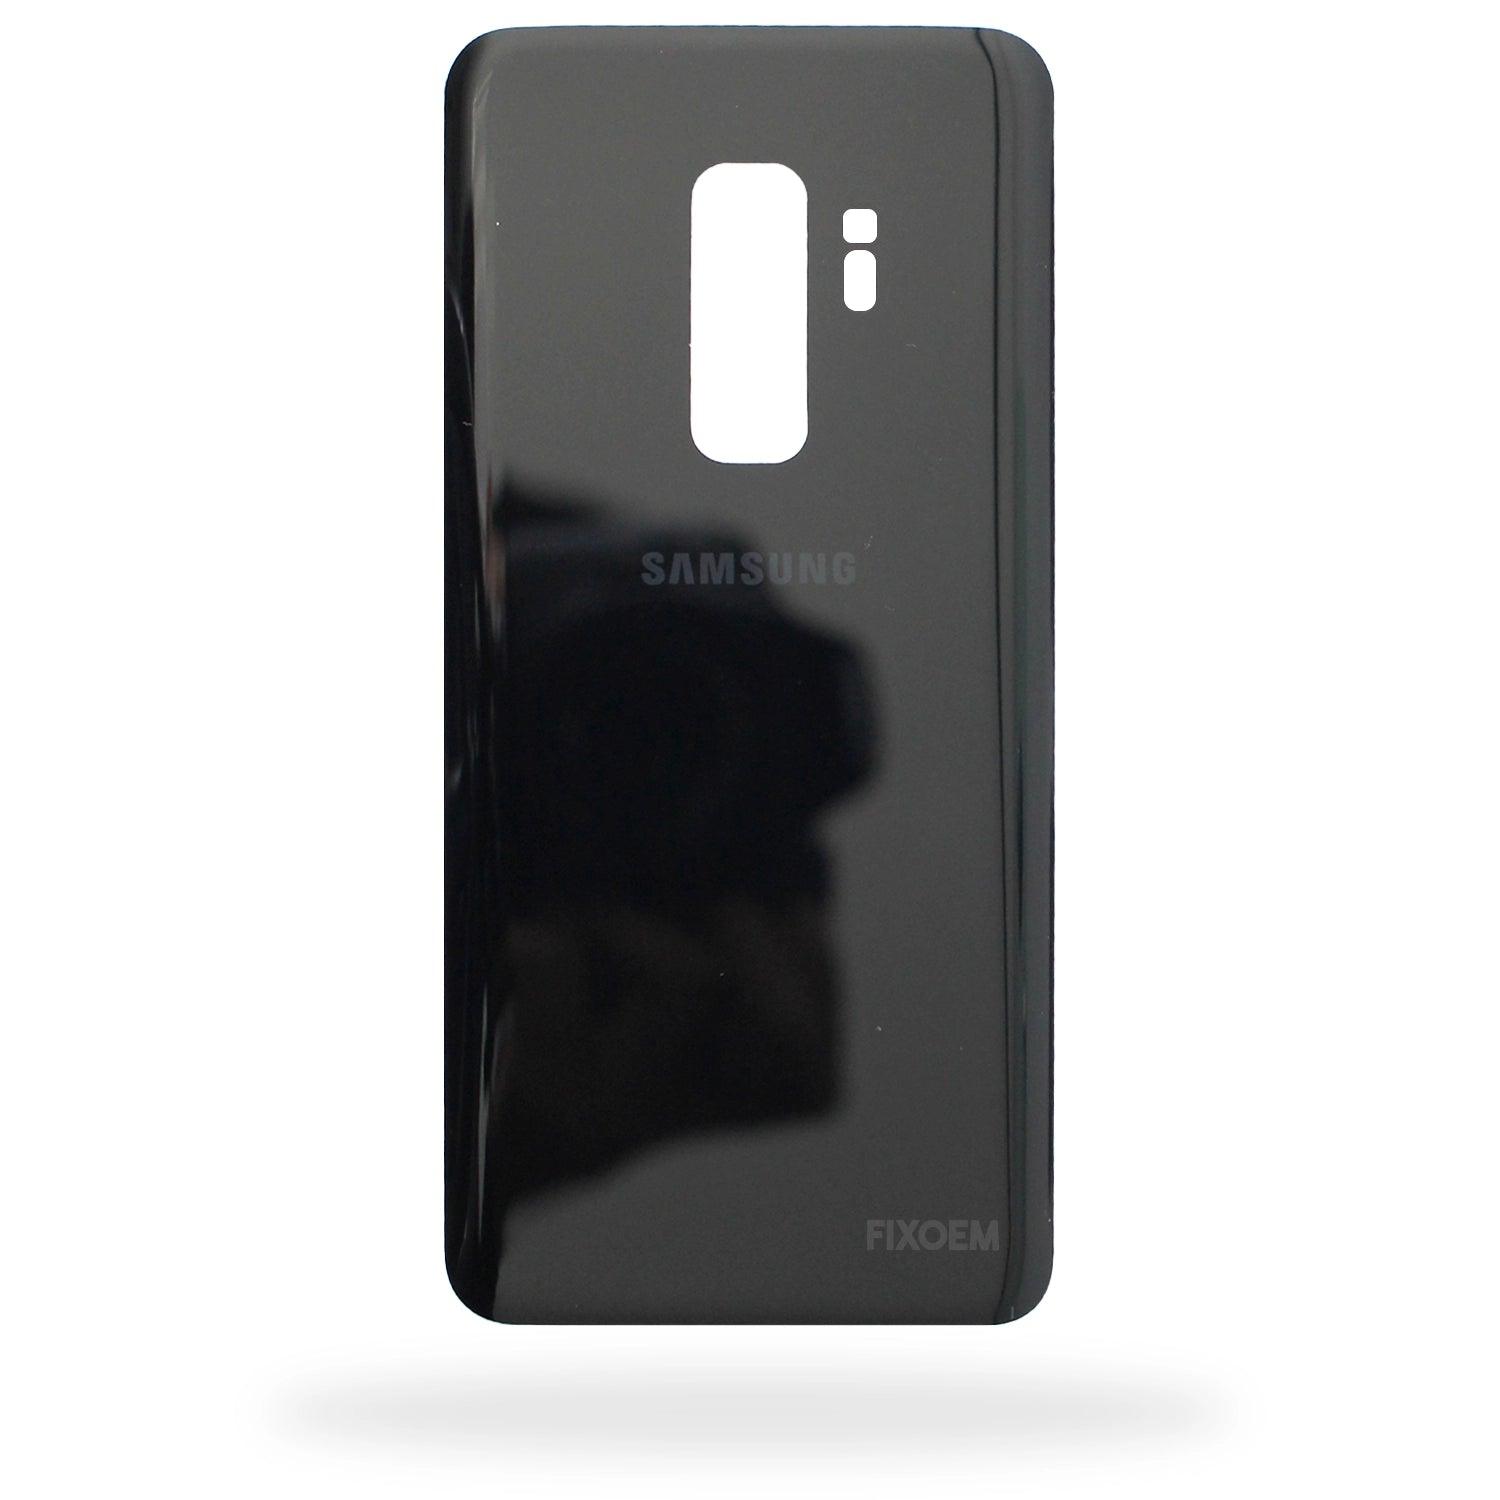 Tapa Trasera Samsung S9 Plus G965U G965F a solo $ 90.00 Refaccion y puestos celulares, refurbish y microelectronica.- FixOEM